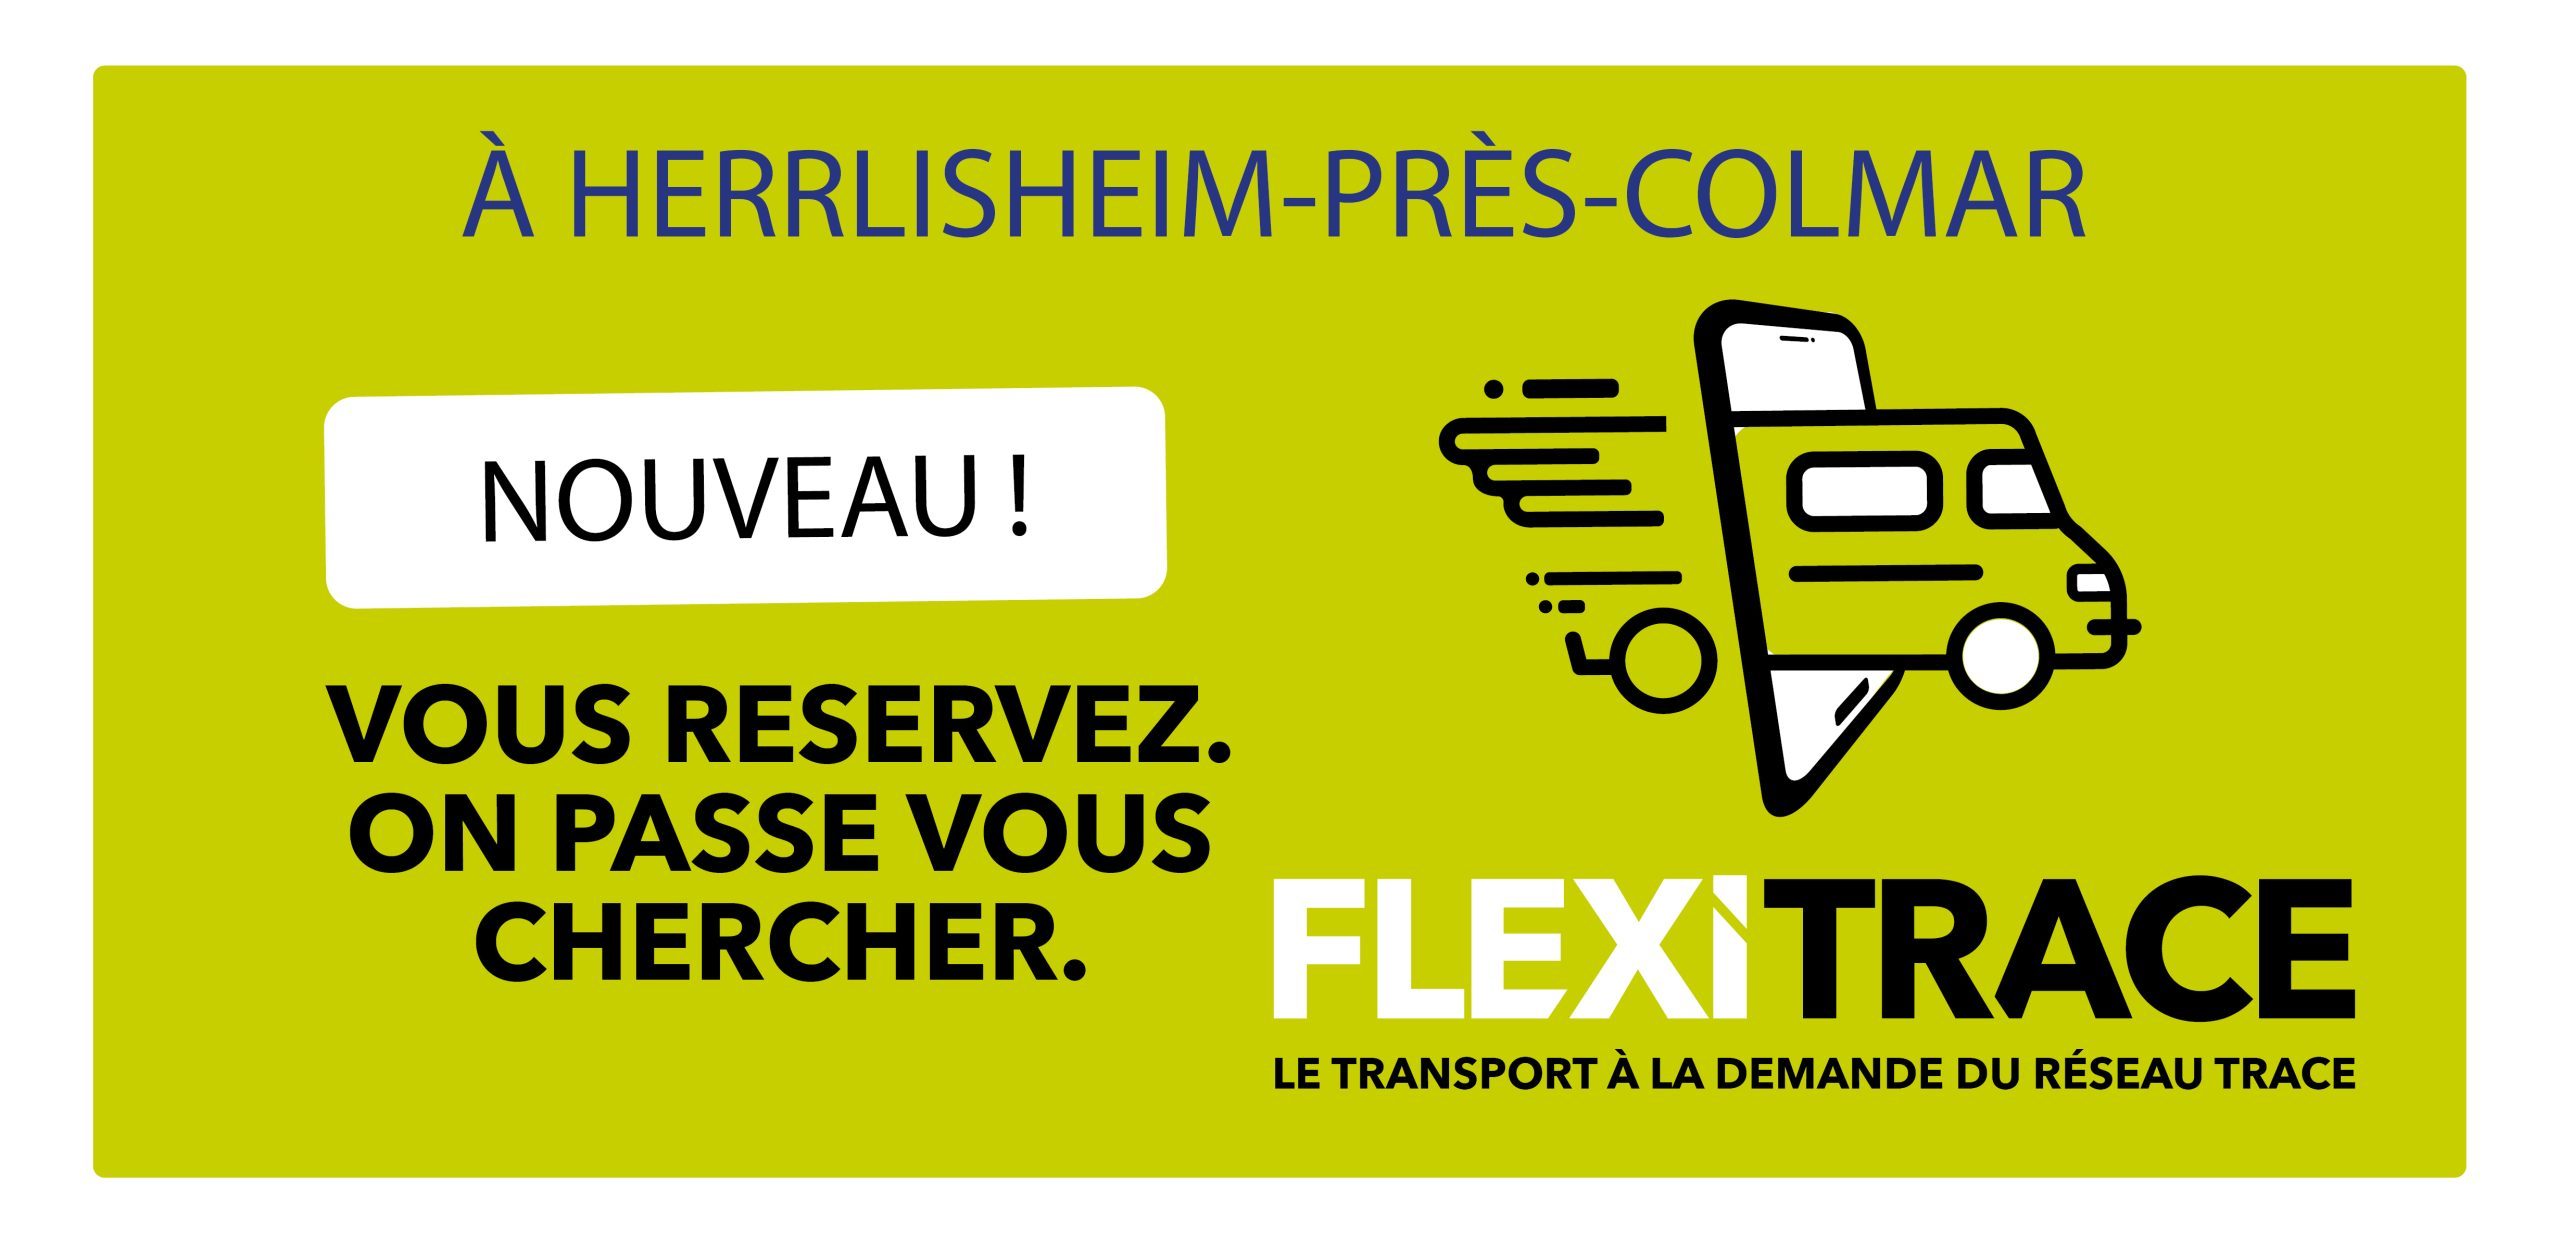 (Français) FlexiTrace arrive à Herrlisheim-près-Colmar